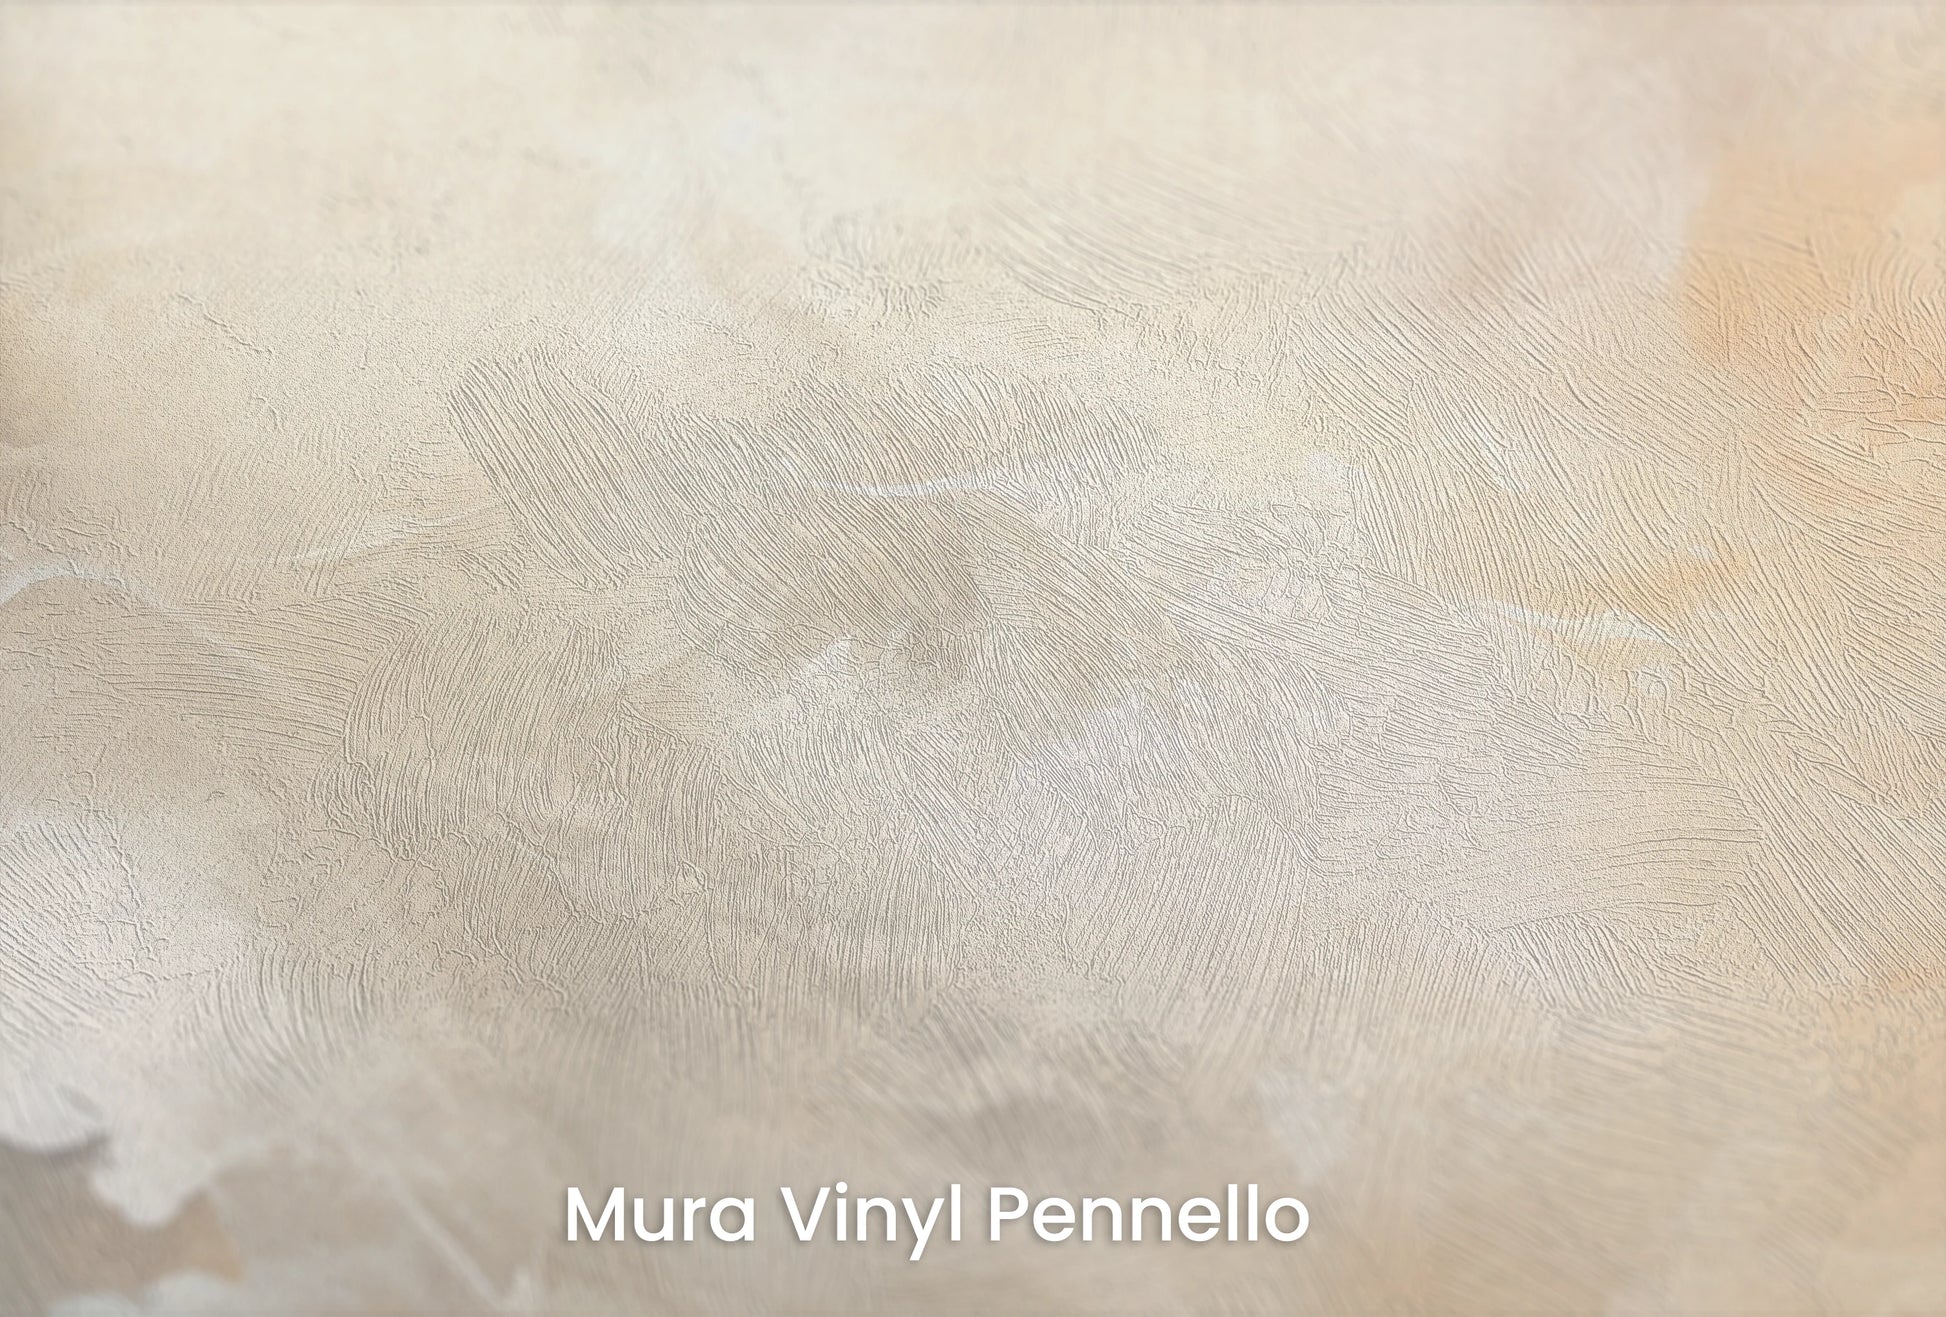 Zbliżenie na artystyczną fototapetę o nazwie Venusian Twilight na podłożu Mura Vinyl Pennello - faktura pociągnięć pędzla malarskiego.